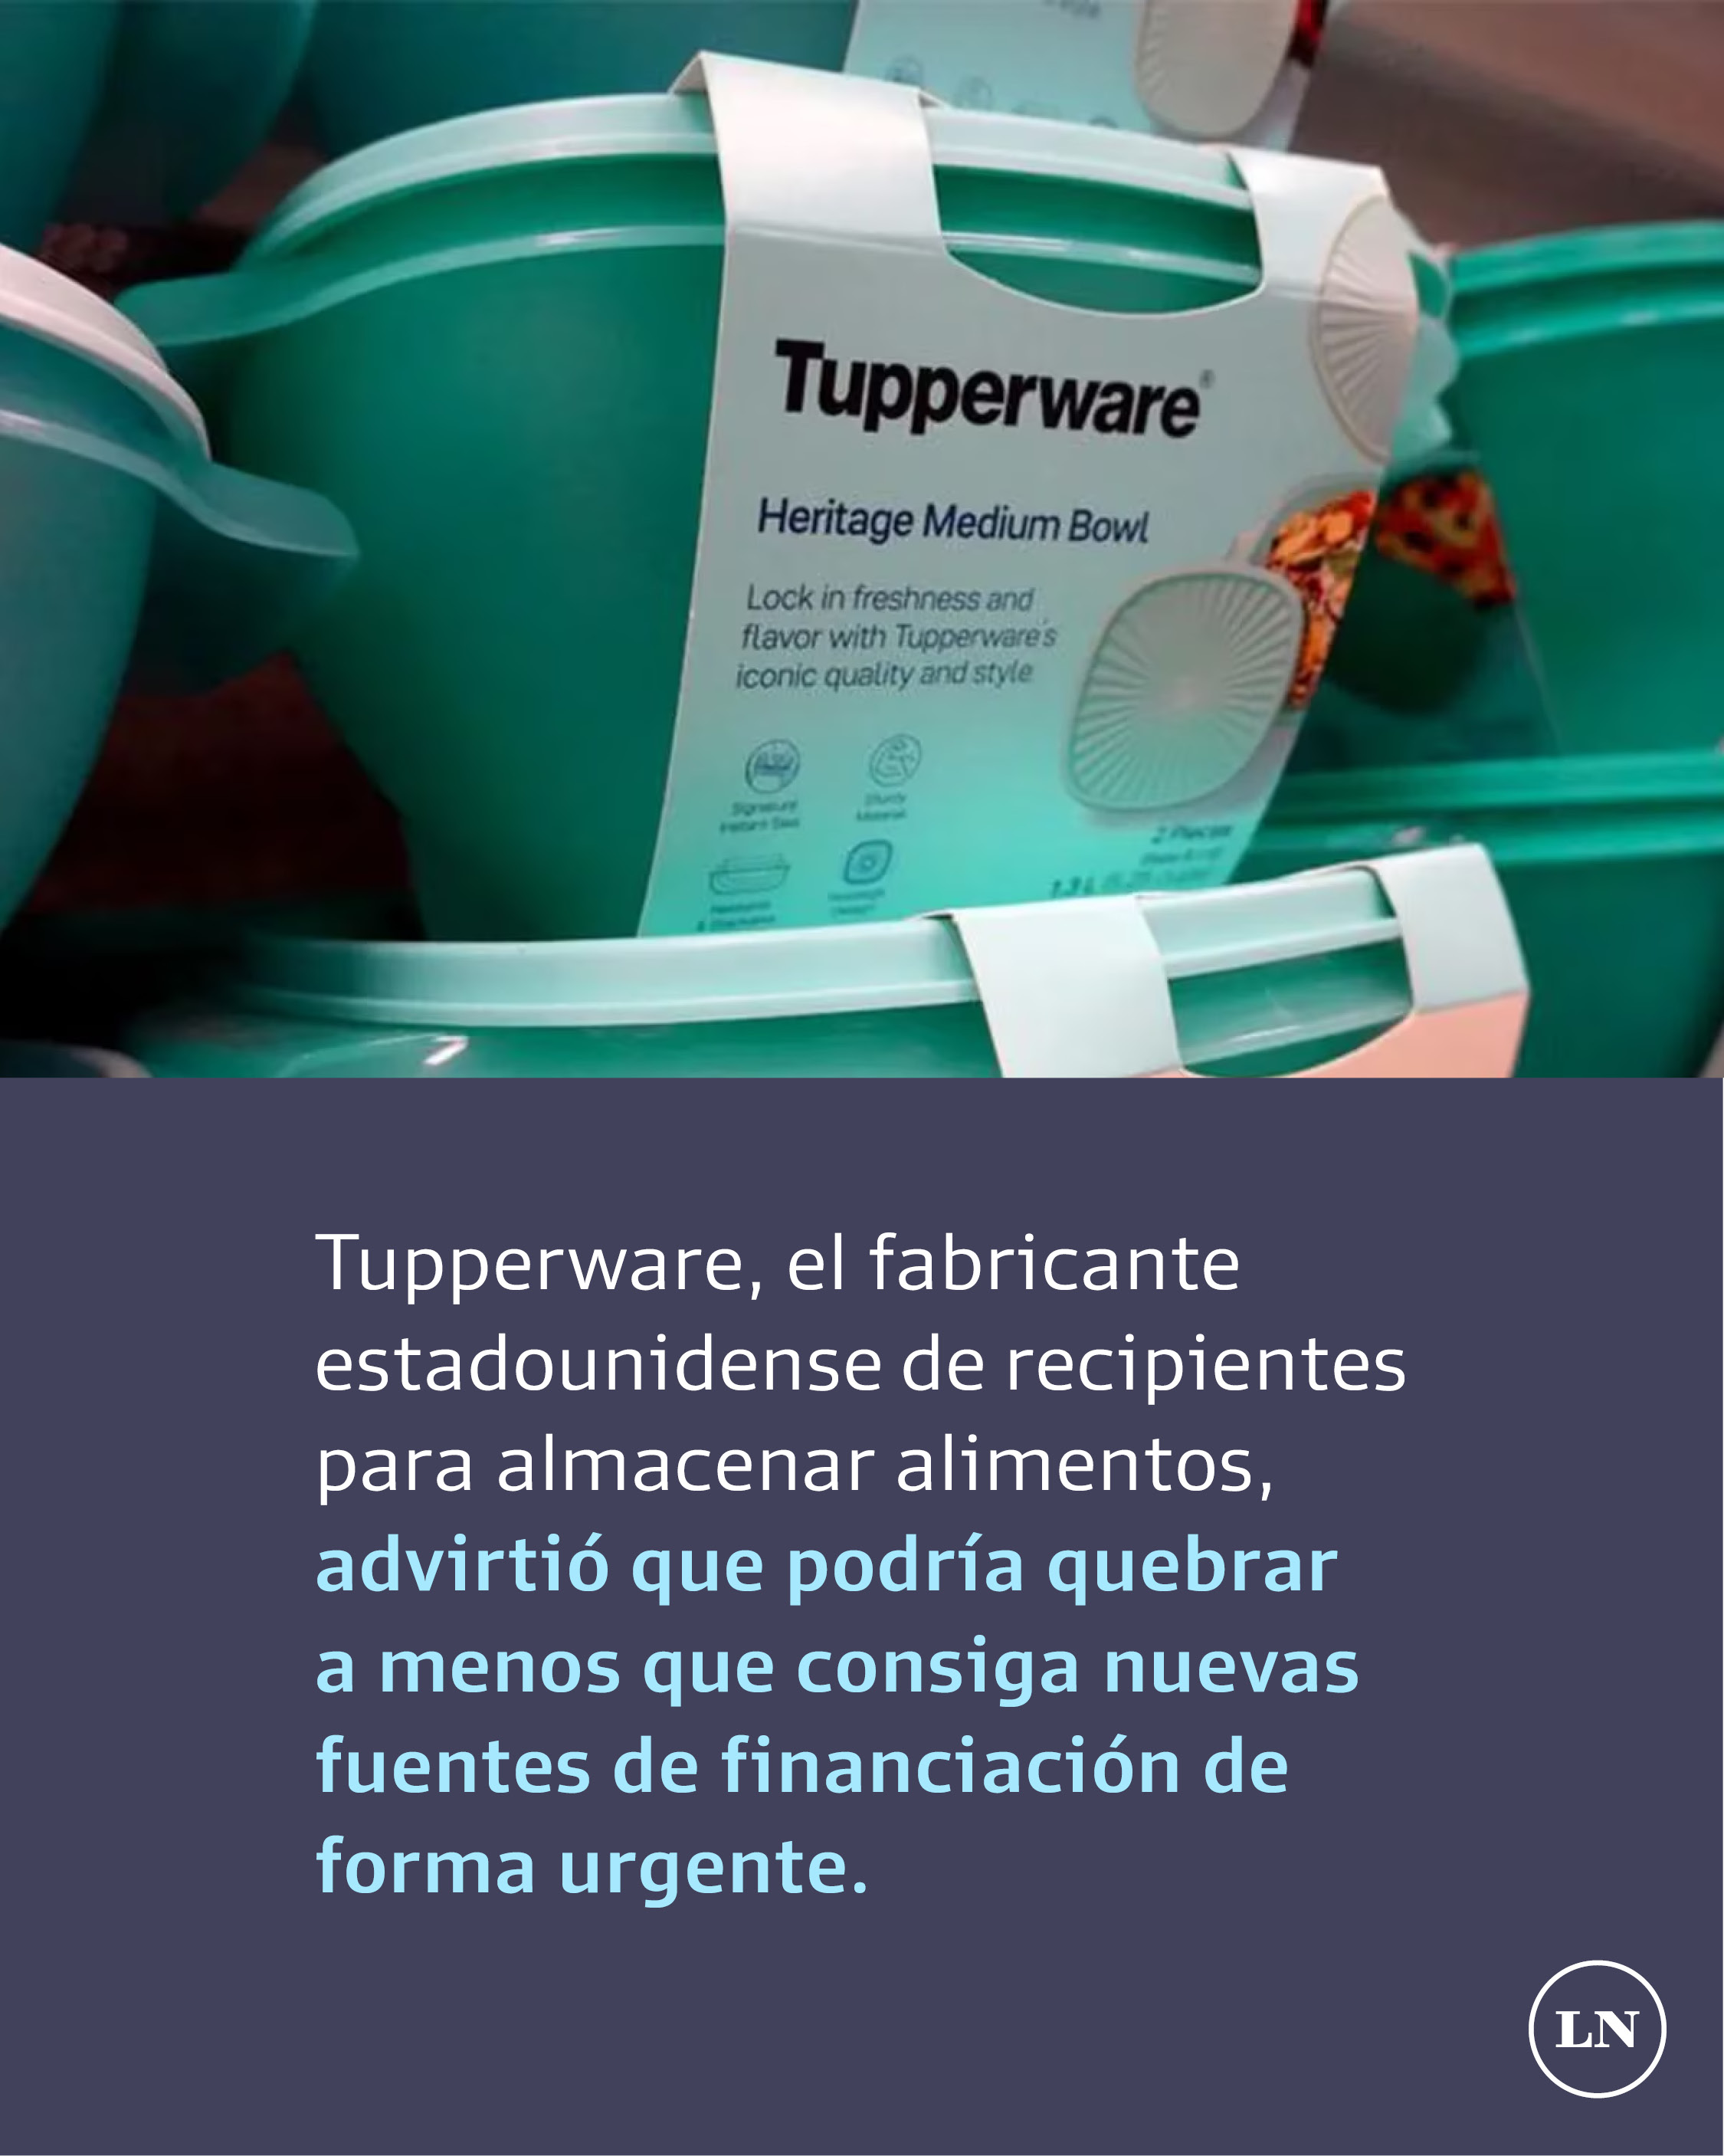 Tupperware: ¿por qué la exitosa empresa de recipientes para